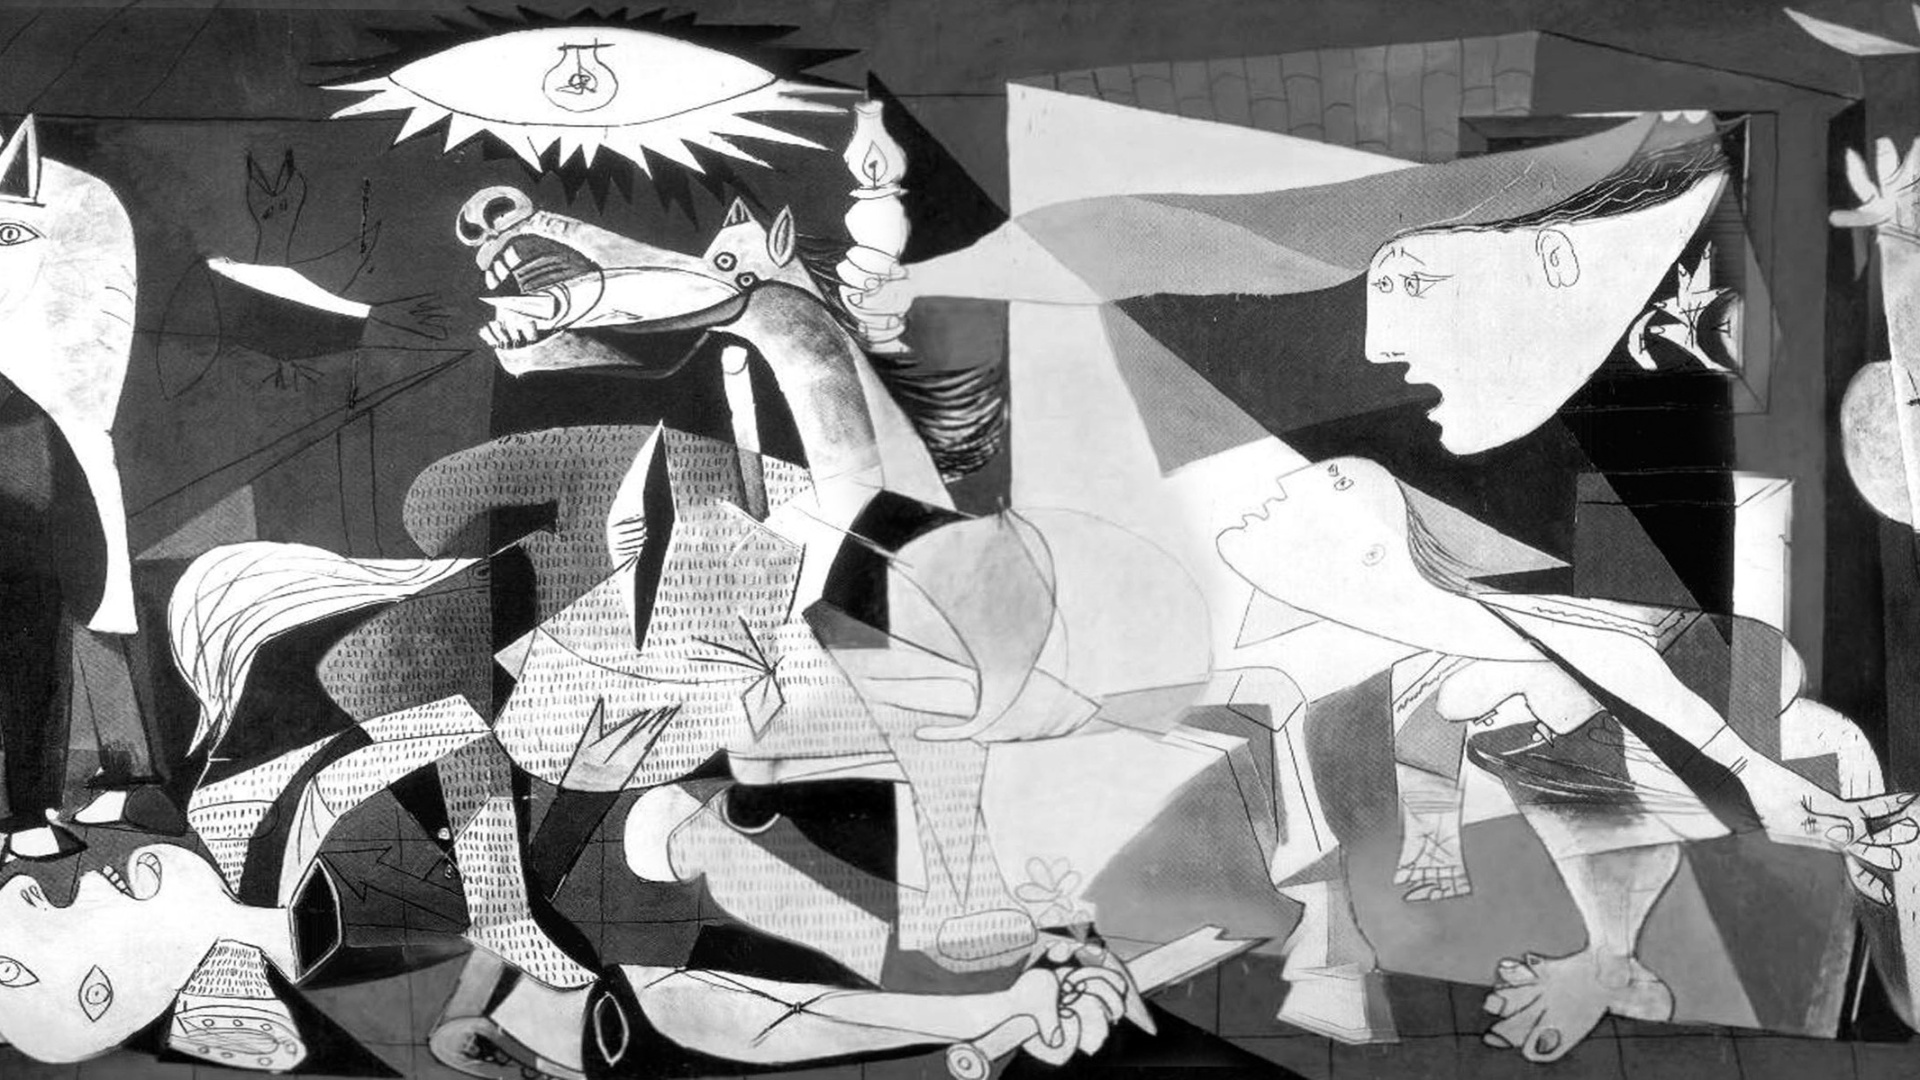  Zapuščina slikarja Pabla Picassa sproža nove polemike: preberi več